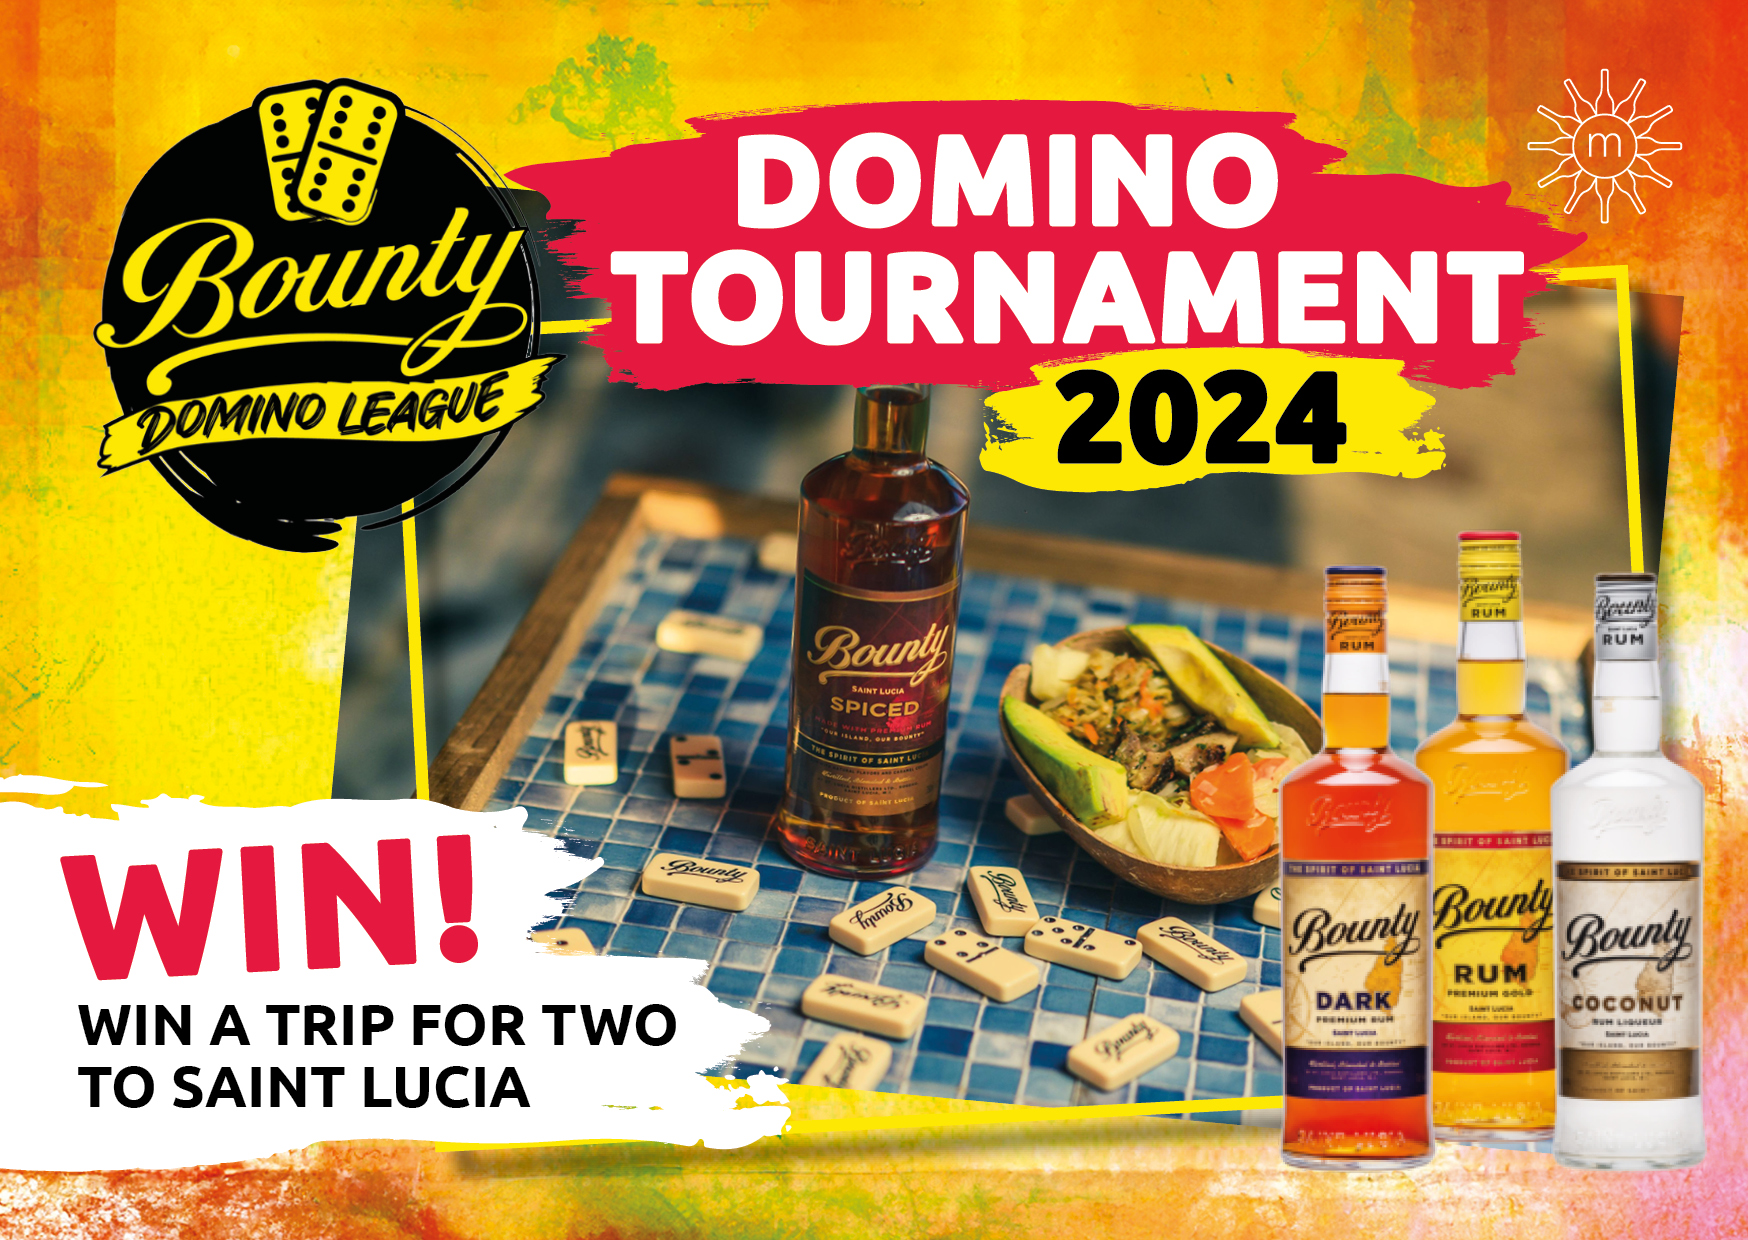 Bounty Rum - Domino Tournament 2024